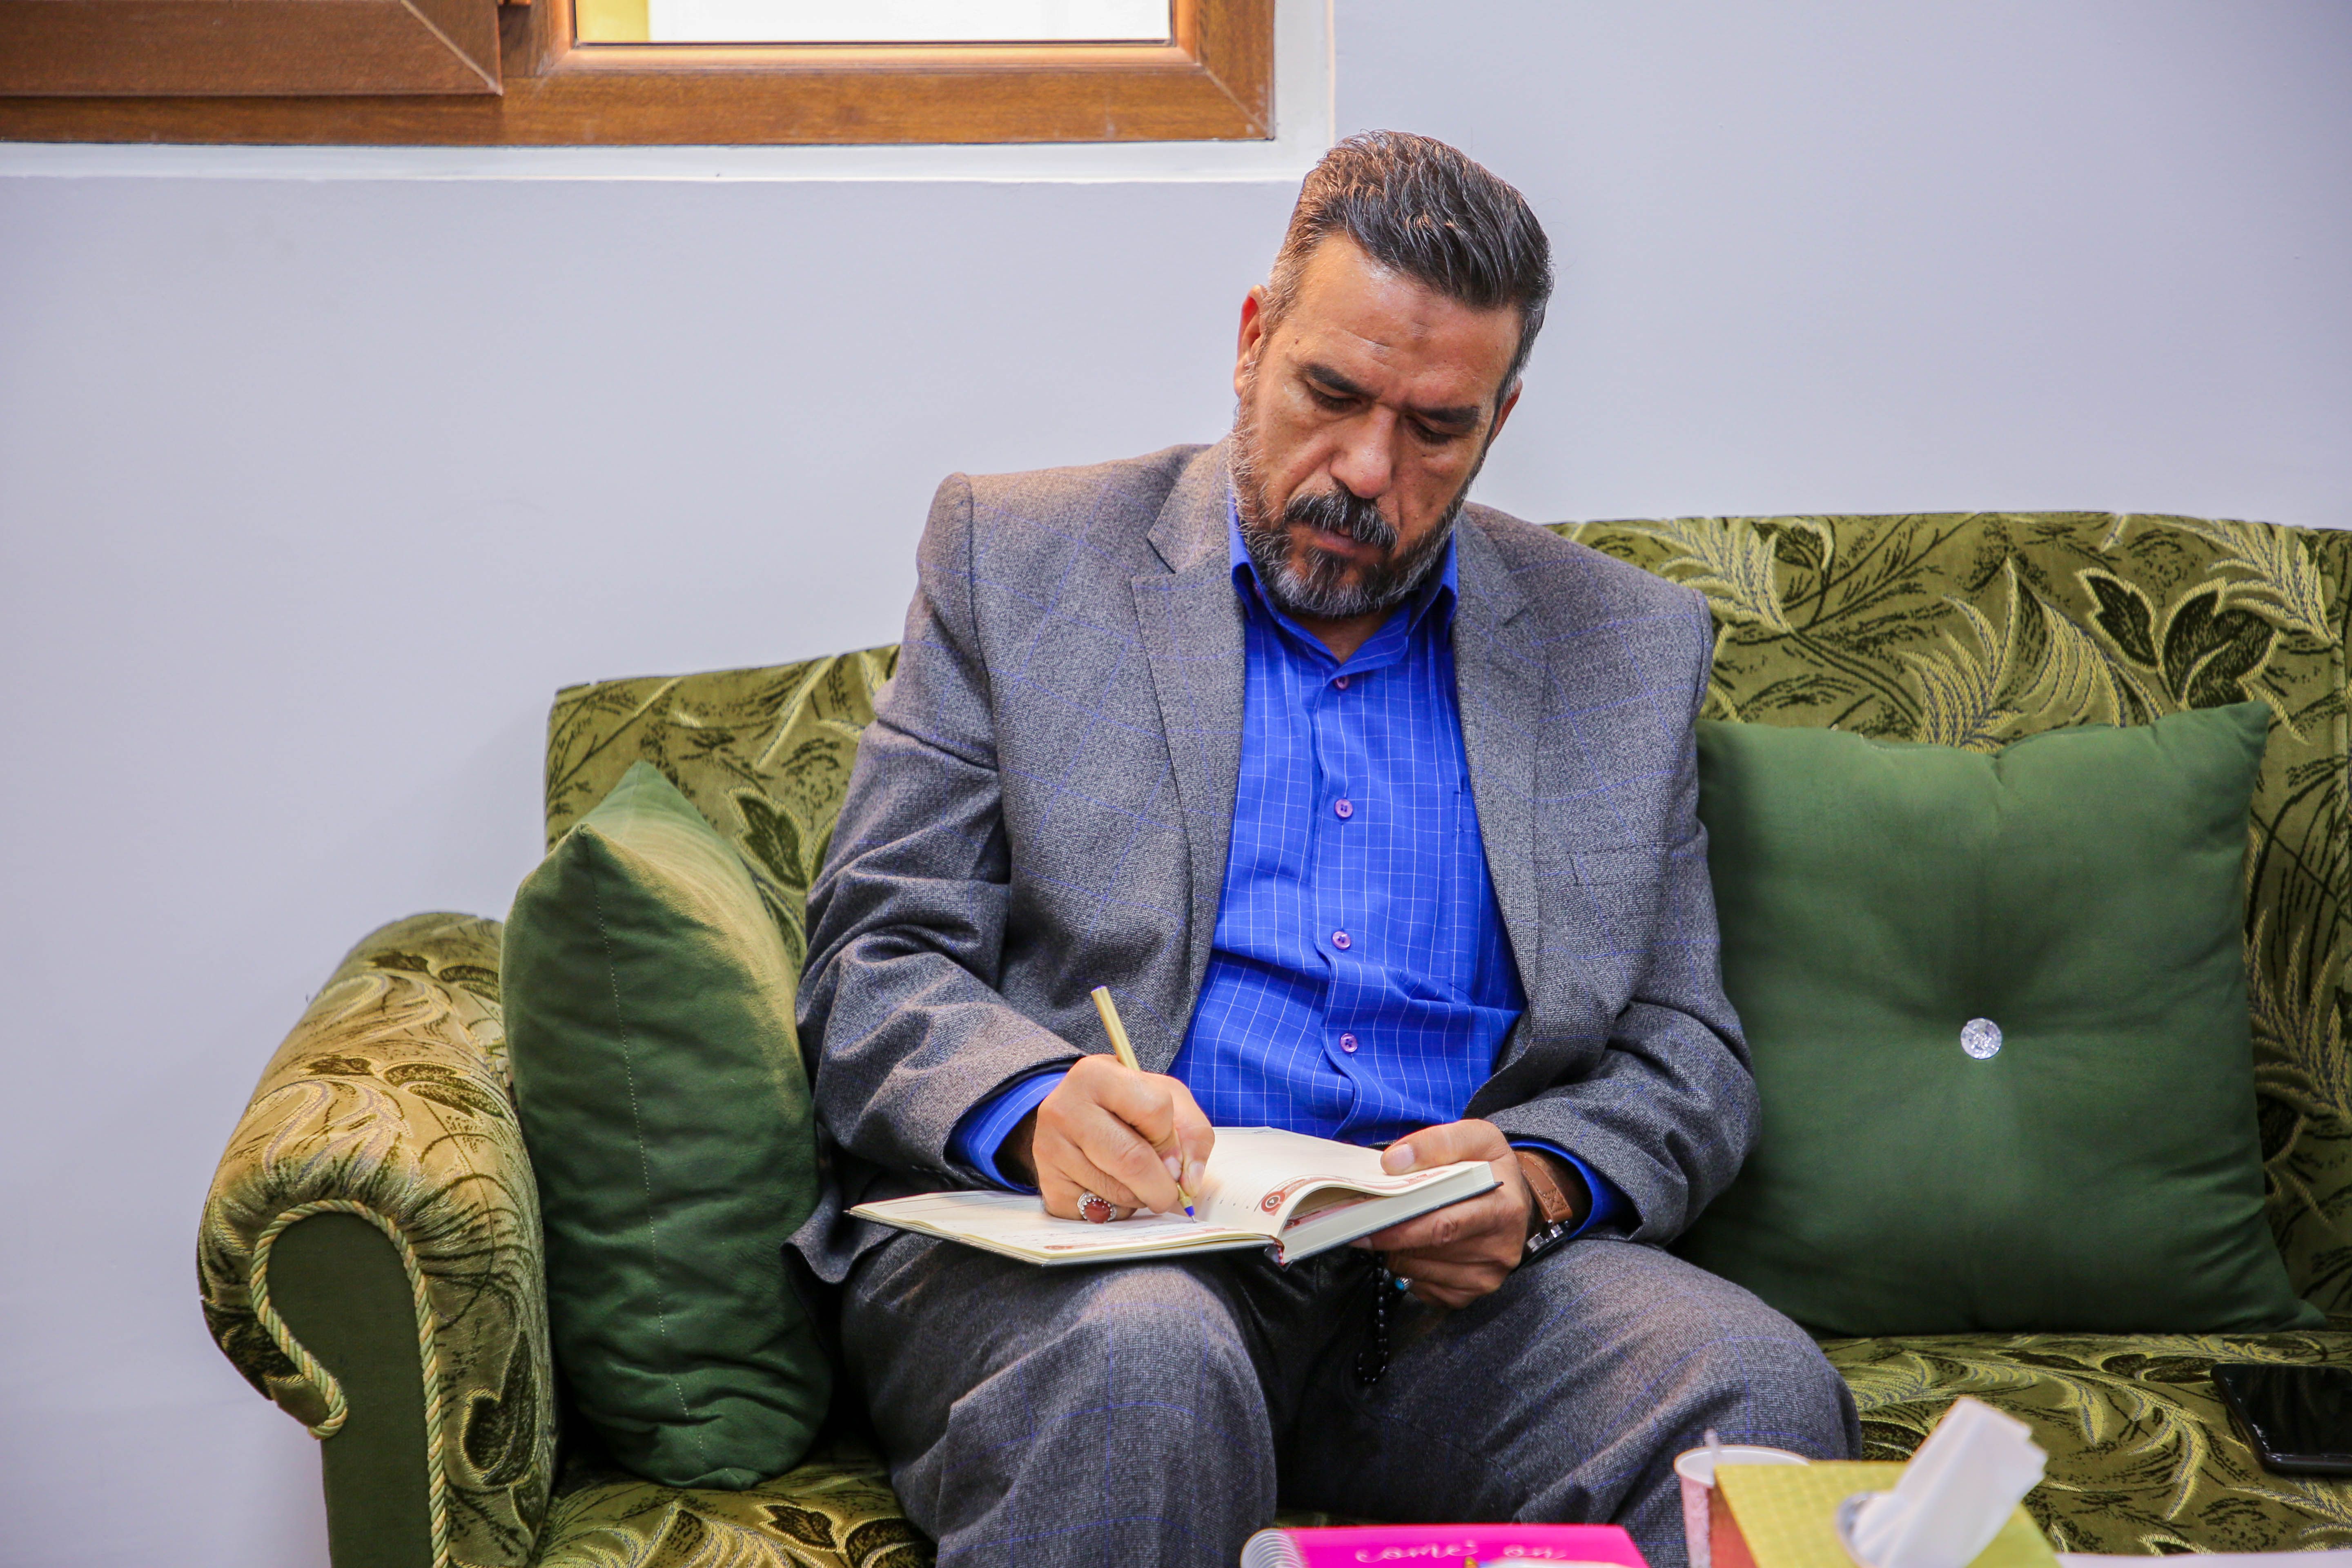 جامعة المصطفى العالمية - ممثلية العراق تزور معهد القرآن الكريم لفتح أبواب التعاون بين الطرفين